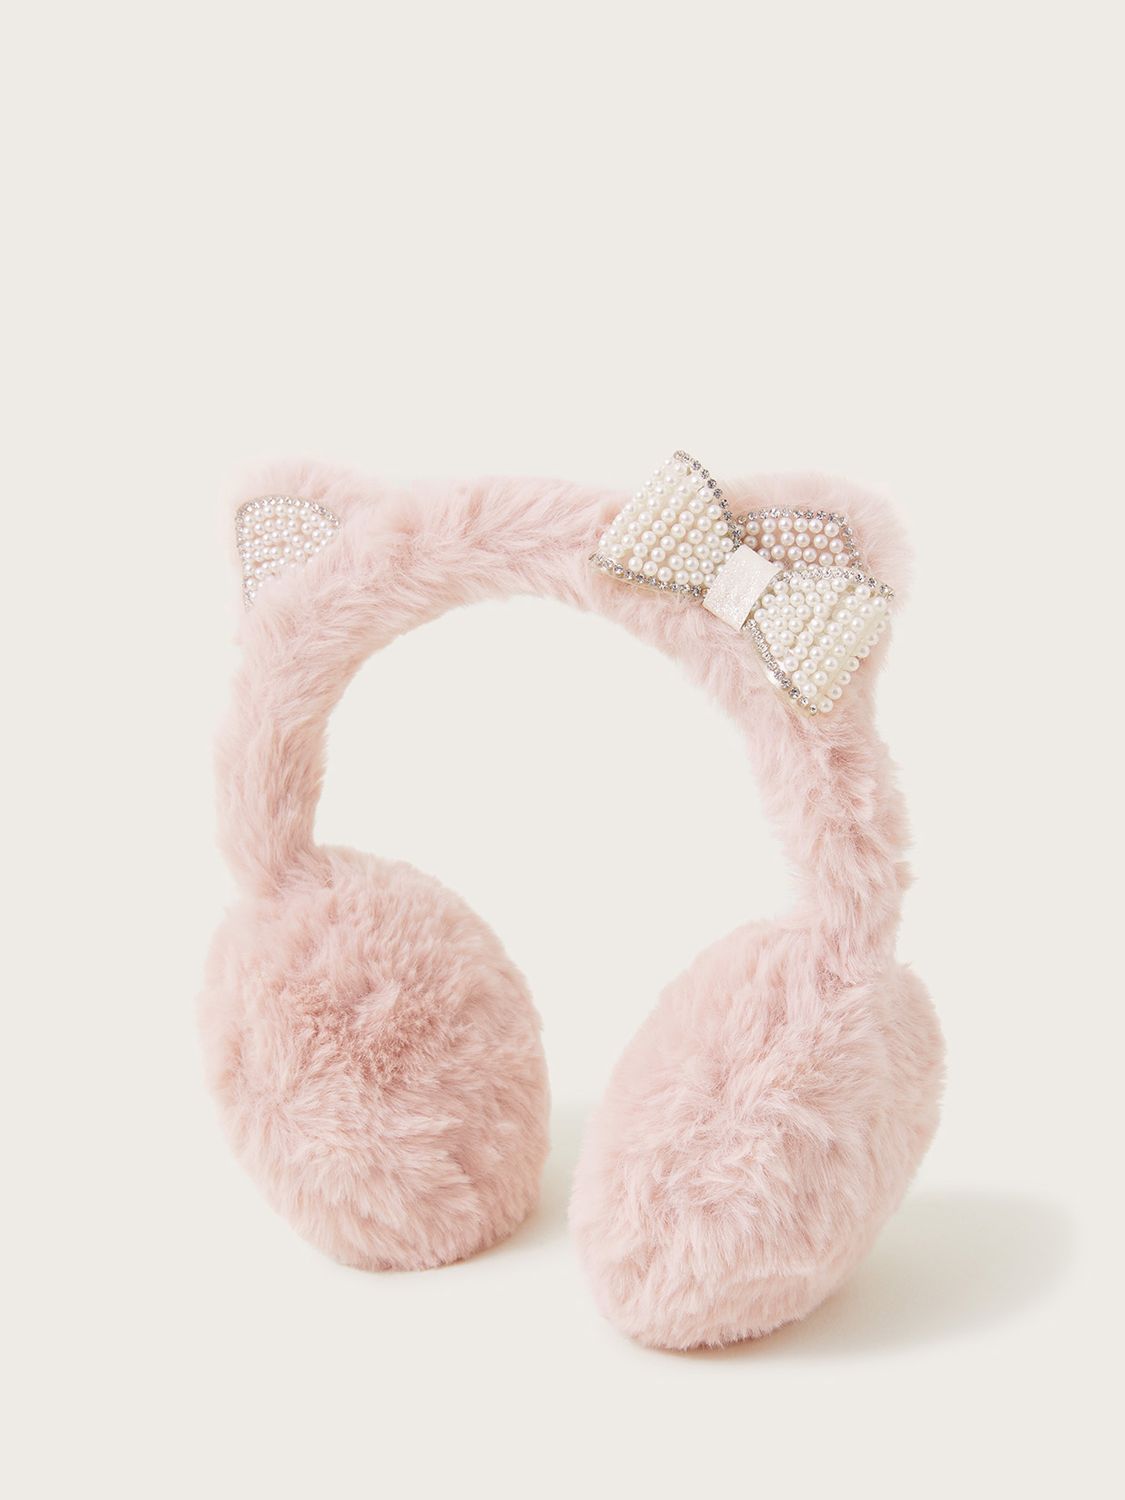 Monsoon Kids' Cat Dazzle Faux Fur Ear Muffs, Pink, One Size